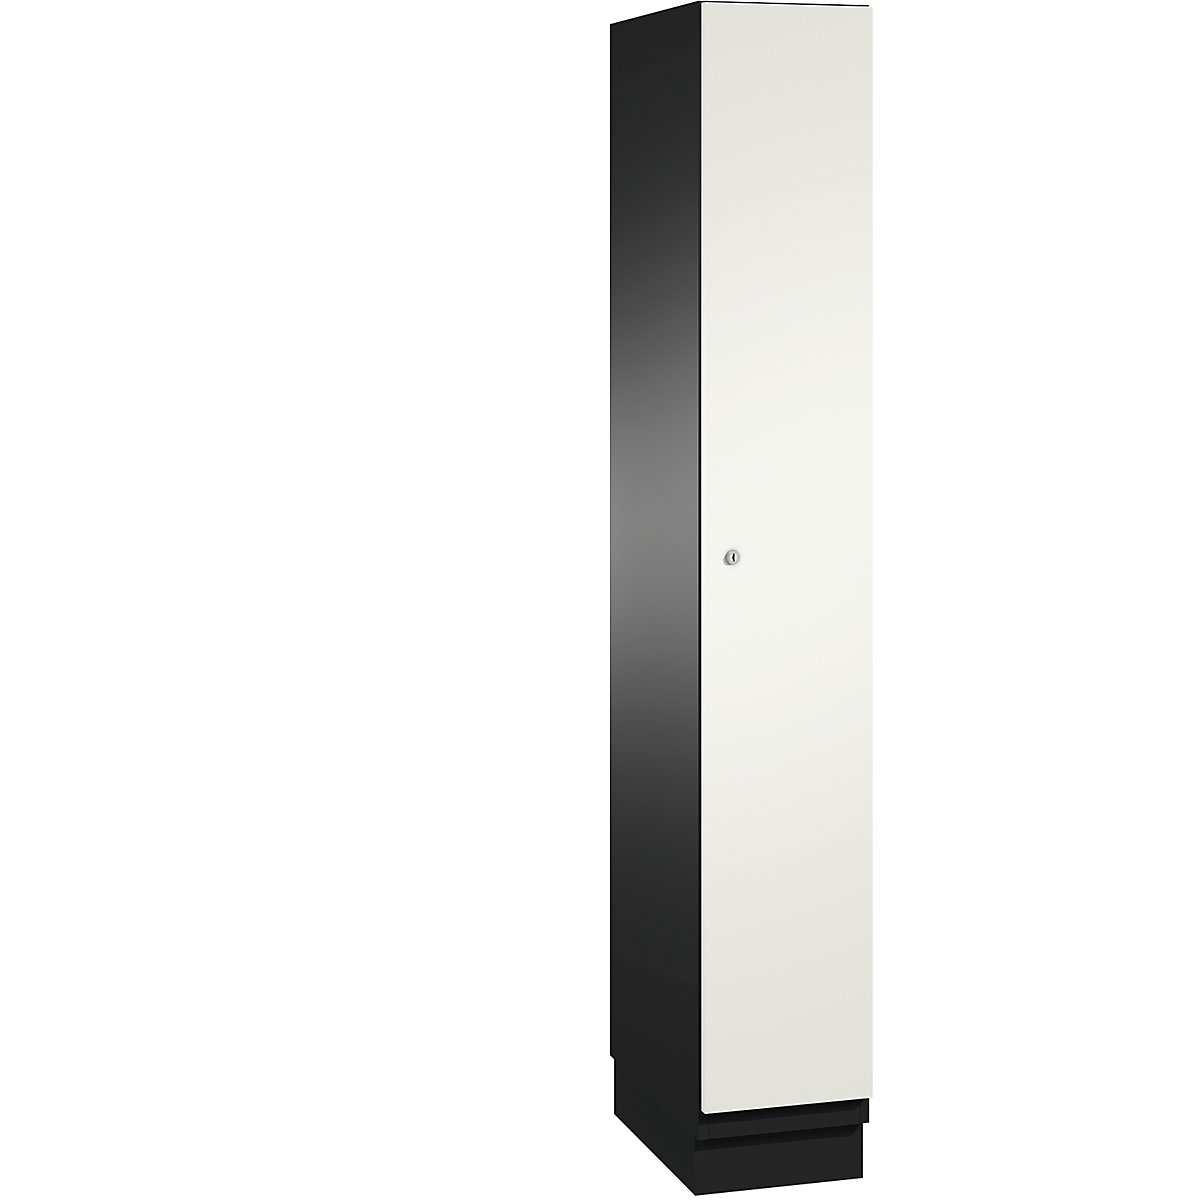 C+P – Šatní skříň CAMBIO s dveřmi z ocelového plechu, 1 oddíl, šířka 300 mm, korpus černošedý / dveře čistá bílá